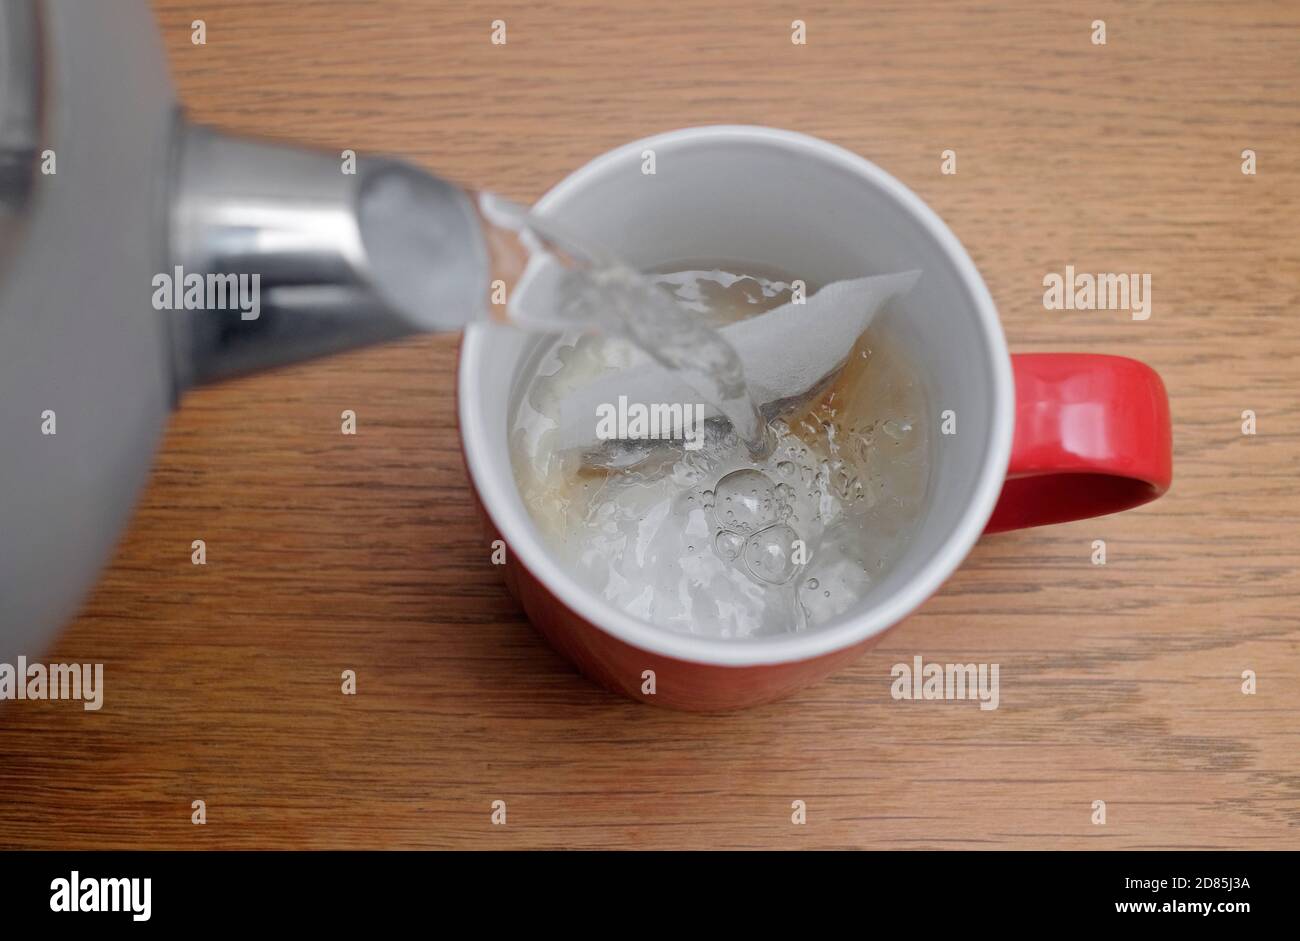 preparar una taza de té, vertiendo agua caliente sobre el tebag en una taza roja, norfolk, inglaterra Foto de stock